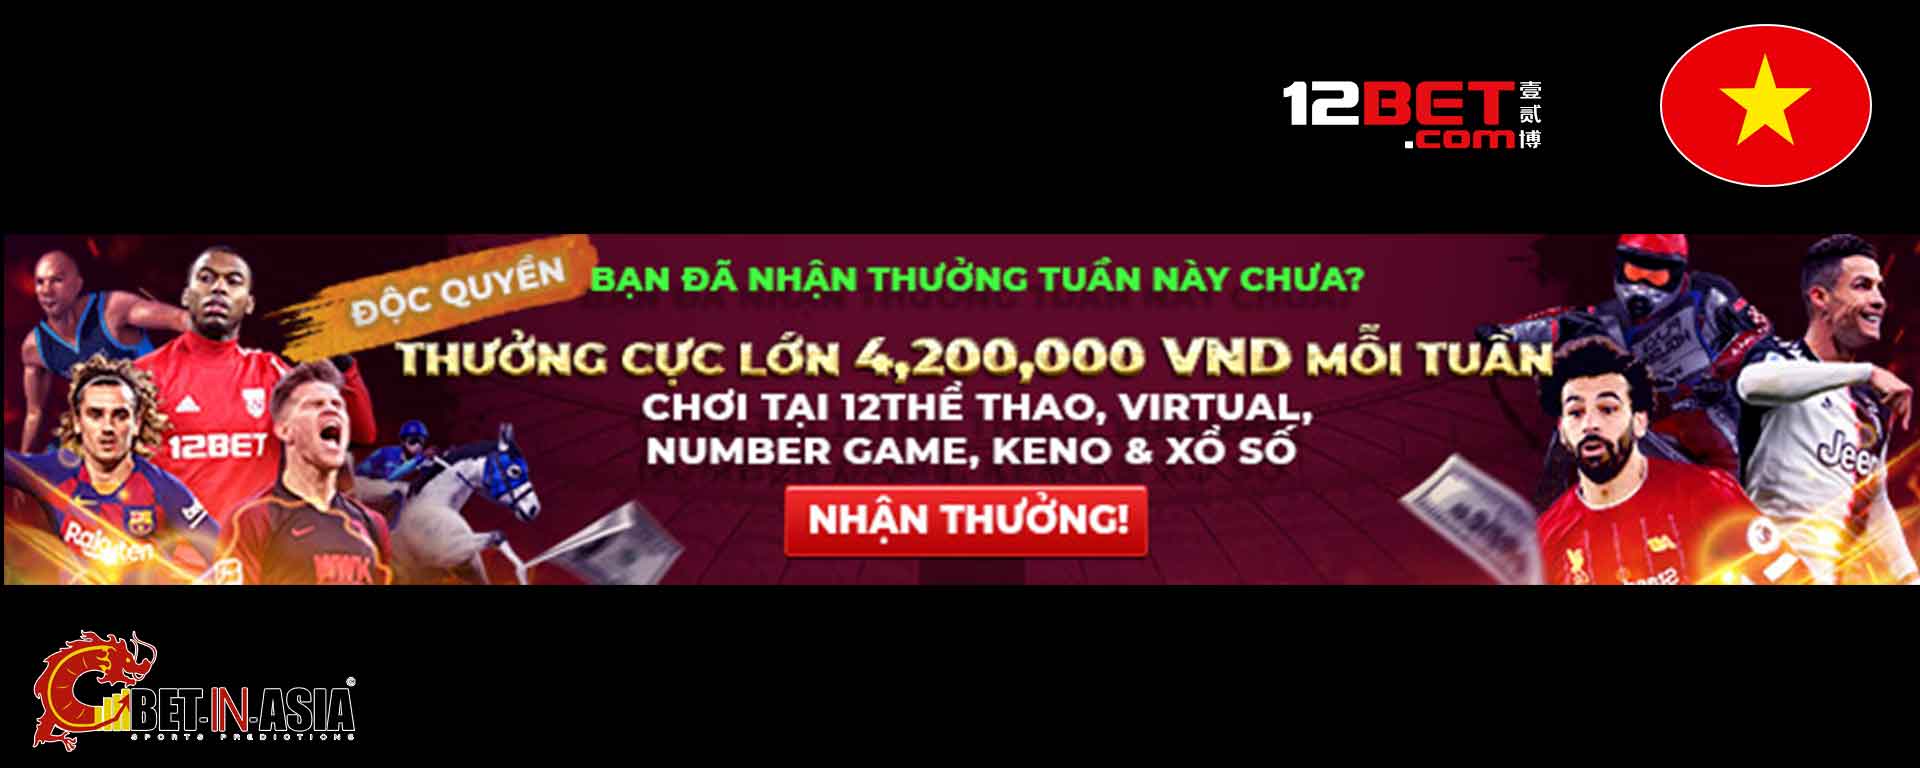 12bet Việt Nam cung cấp tiền thưởng lớn trong ngày này